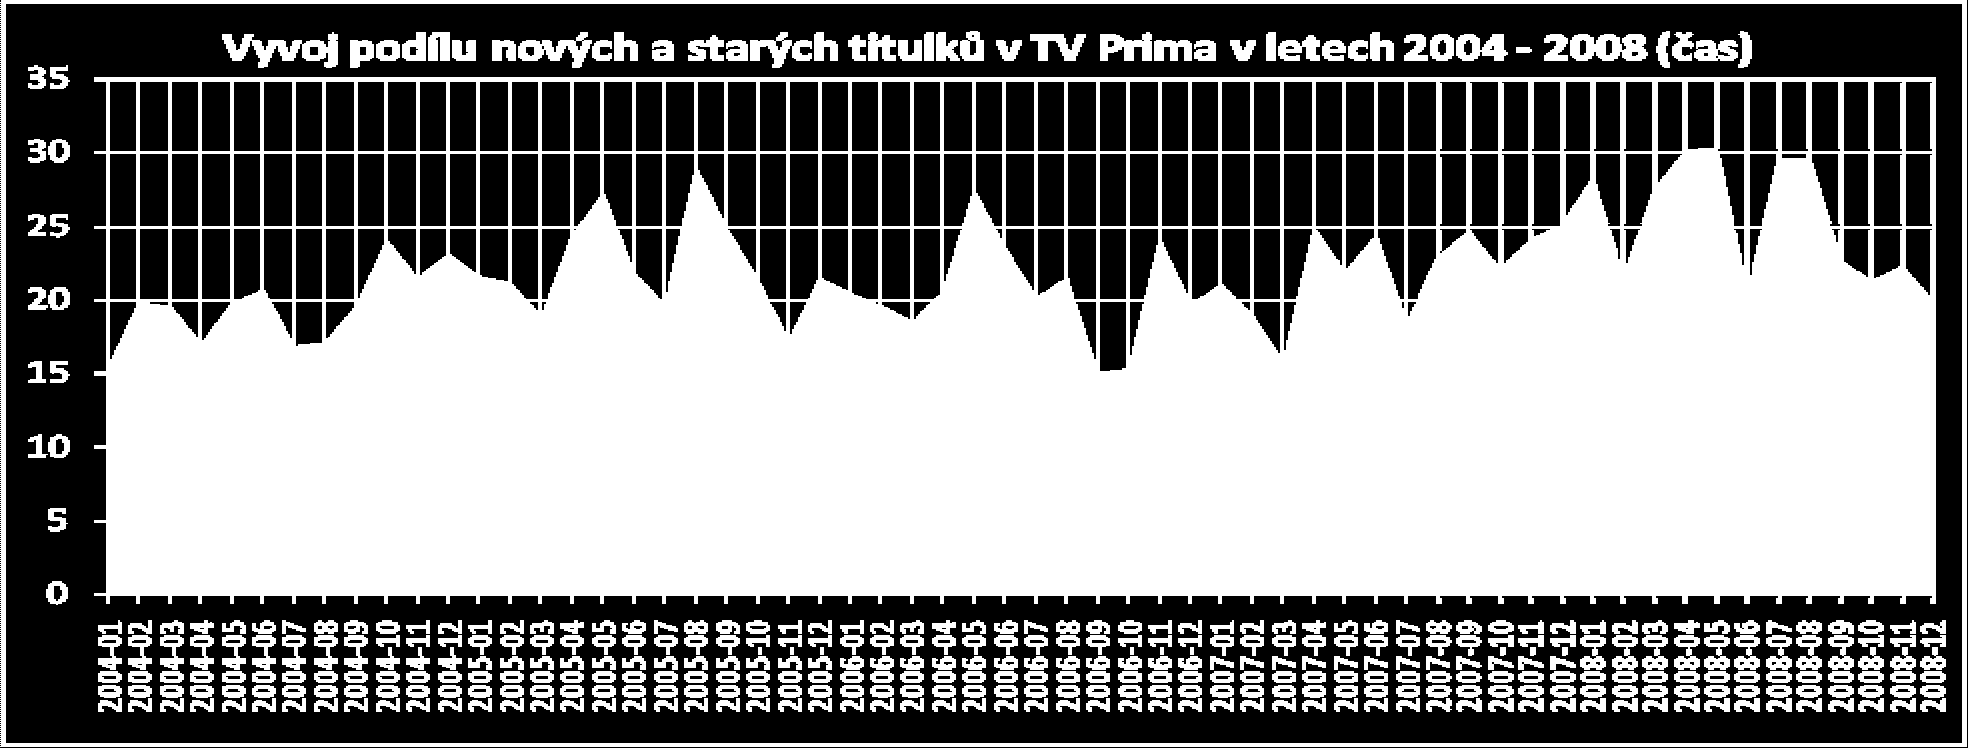 TV Nova v roce 2004 opatřila bylo 24,1 % nových pořadů.